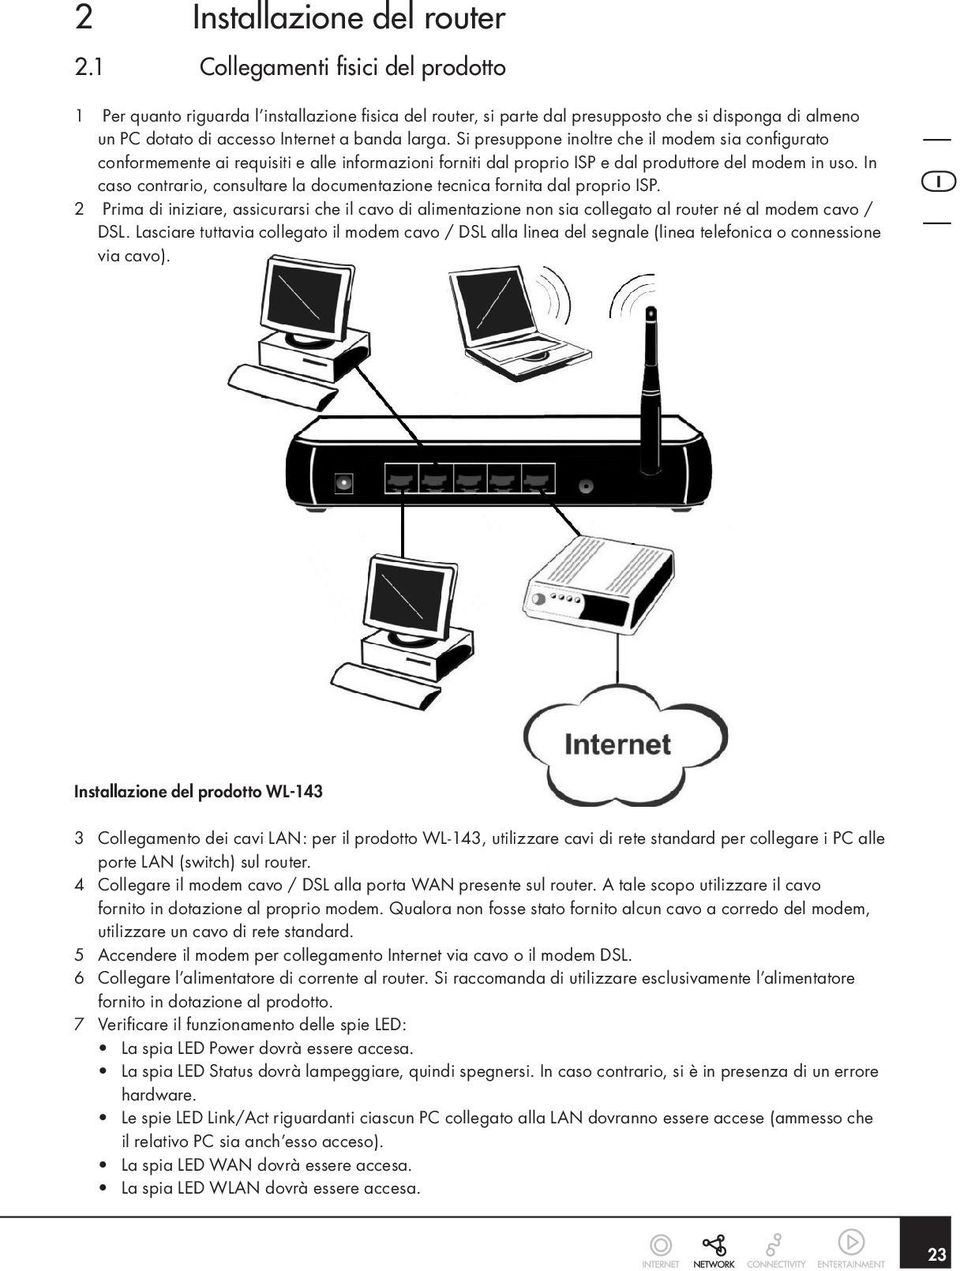 Si presuppone inoltre che il modem sia configurato conformemente ai requisiti e alle informazioni forniti dal proprio ISP e dal produttore del modem in uso.